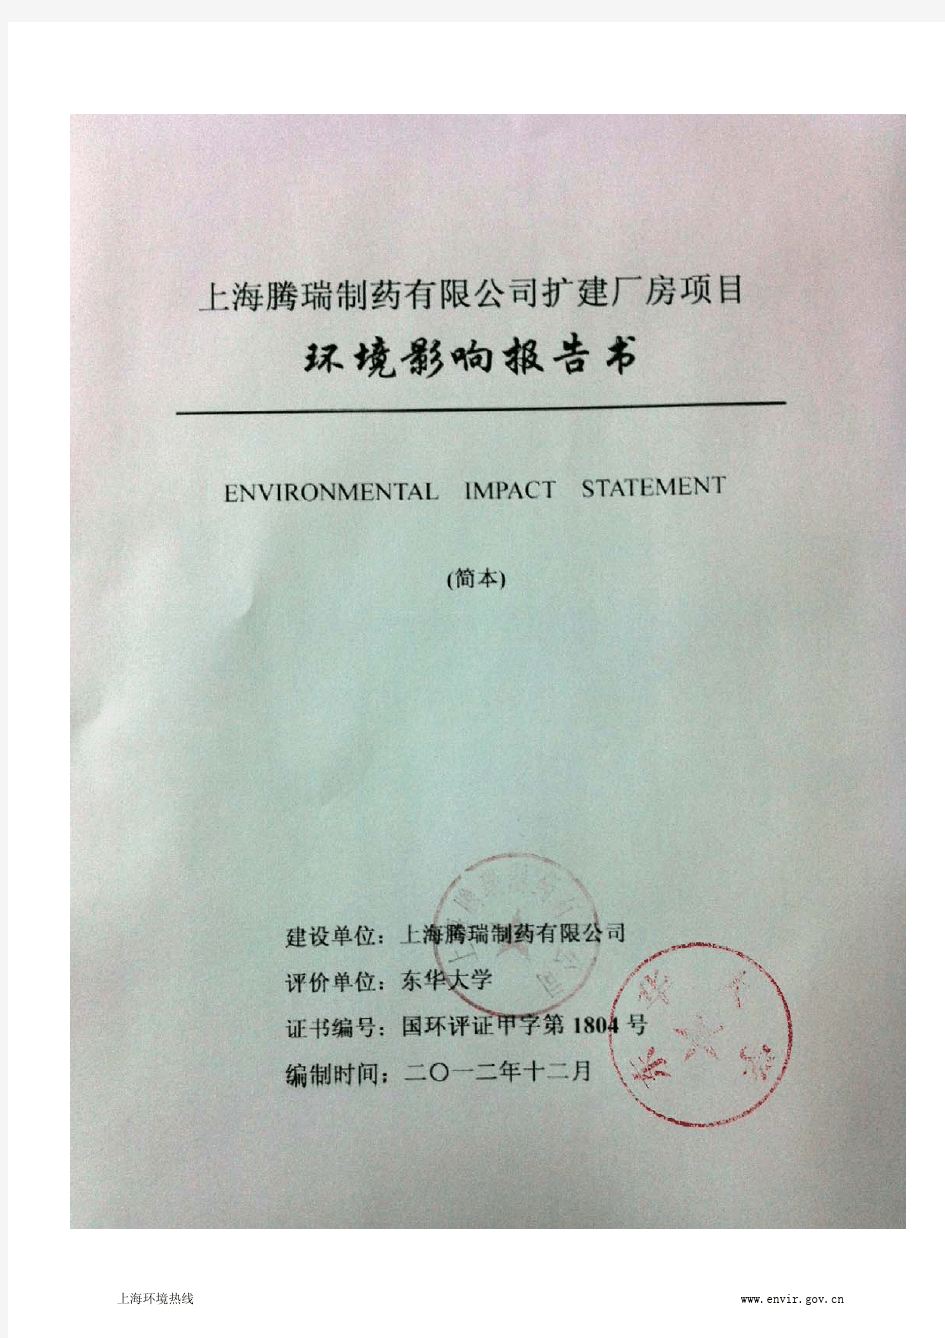 201212-上海腾瑞制药有限公司扩建厂房项目环境影响评价第二次公示